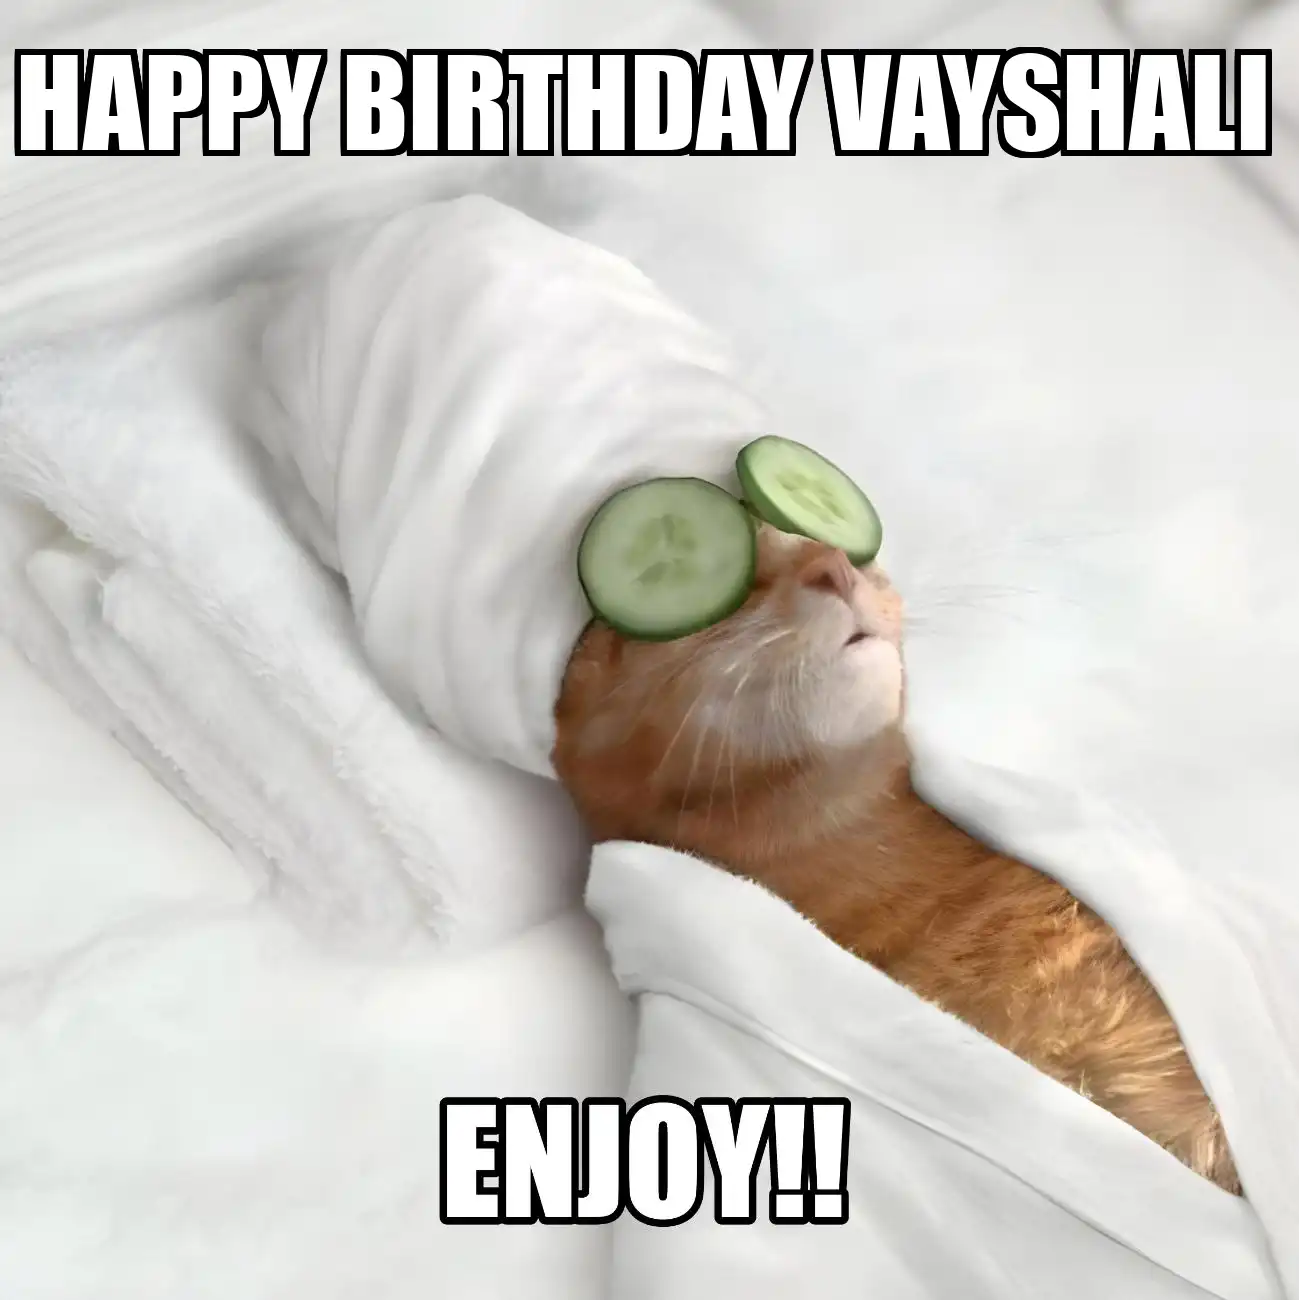 Happy Birthday Vayshali Enjoy Cat Meme